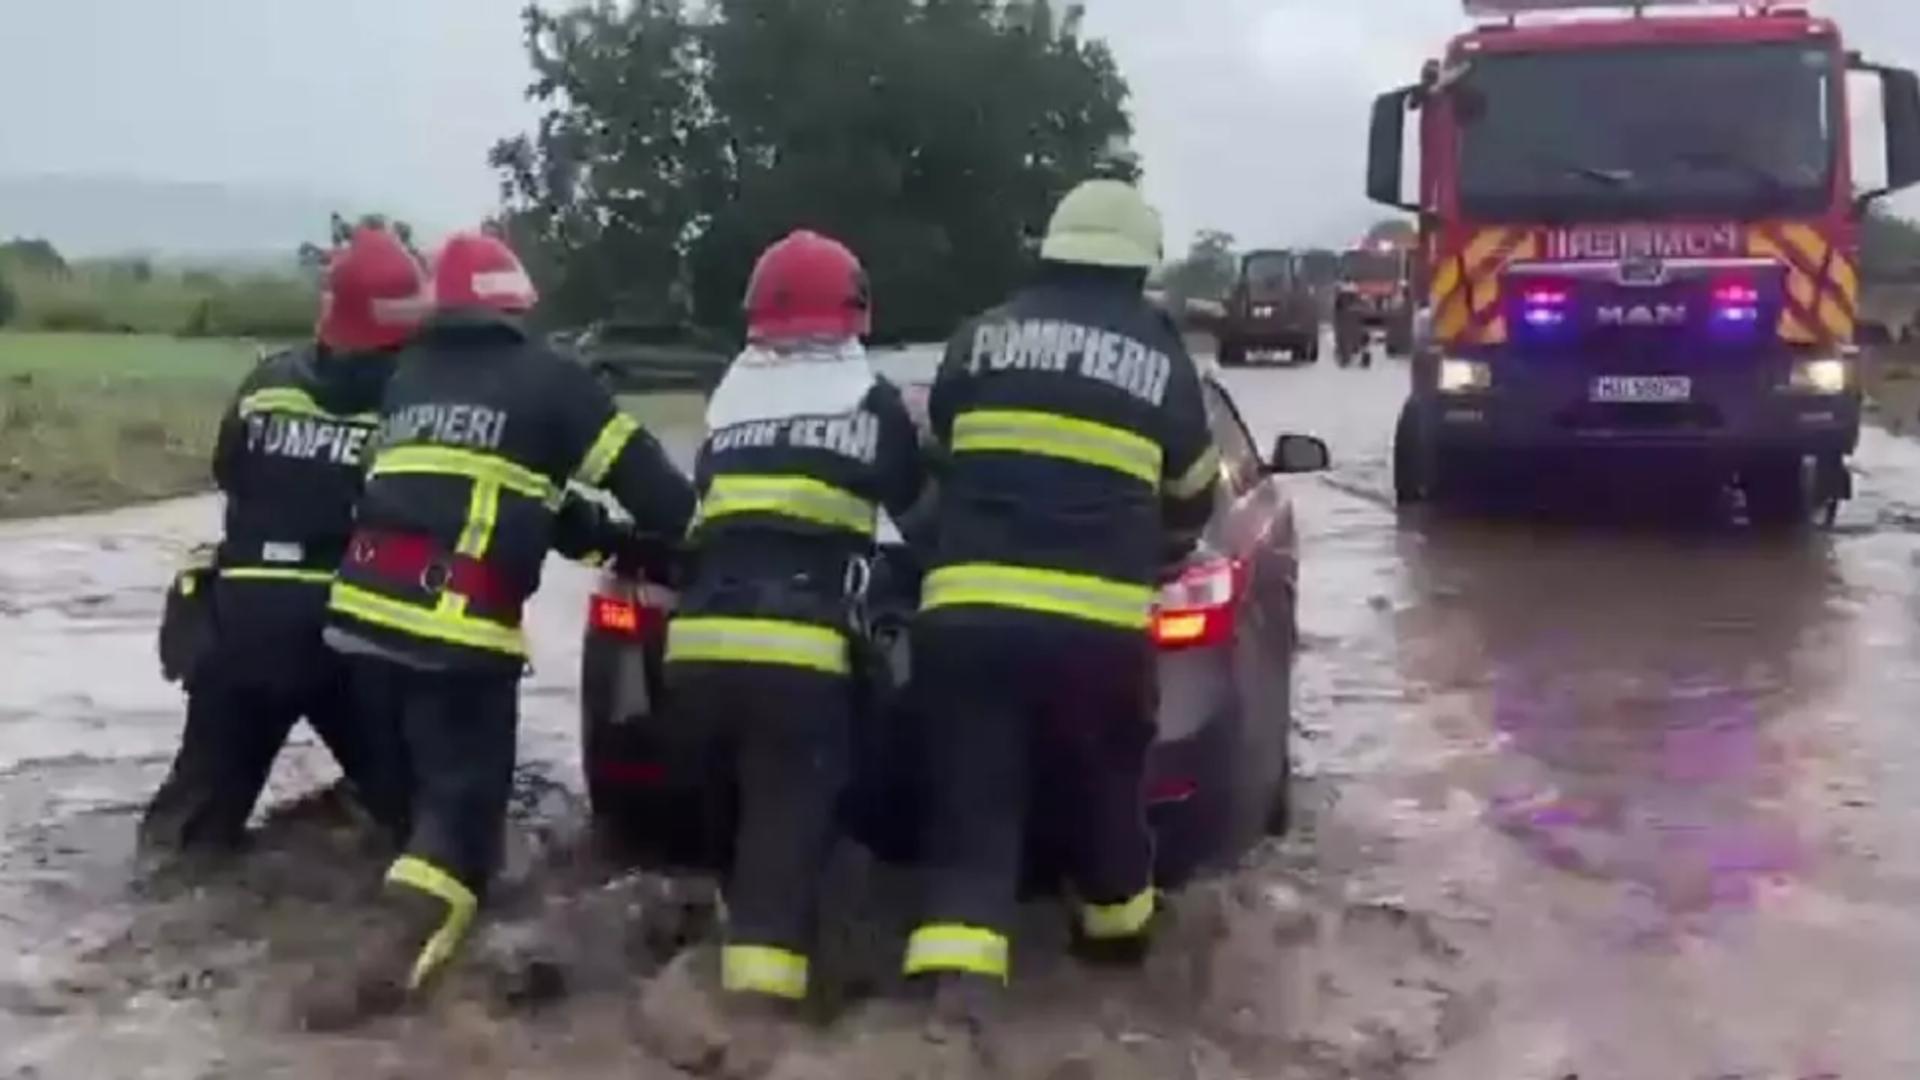 COD ROȘU de inundaţii în bazinul hidrografic Teleajăn, Prahova. ISU anunţă creşterea capacităţii operaţionale. Au fost transmise mesaje RO-ALERT